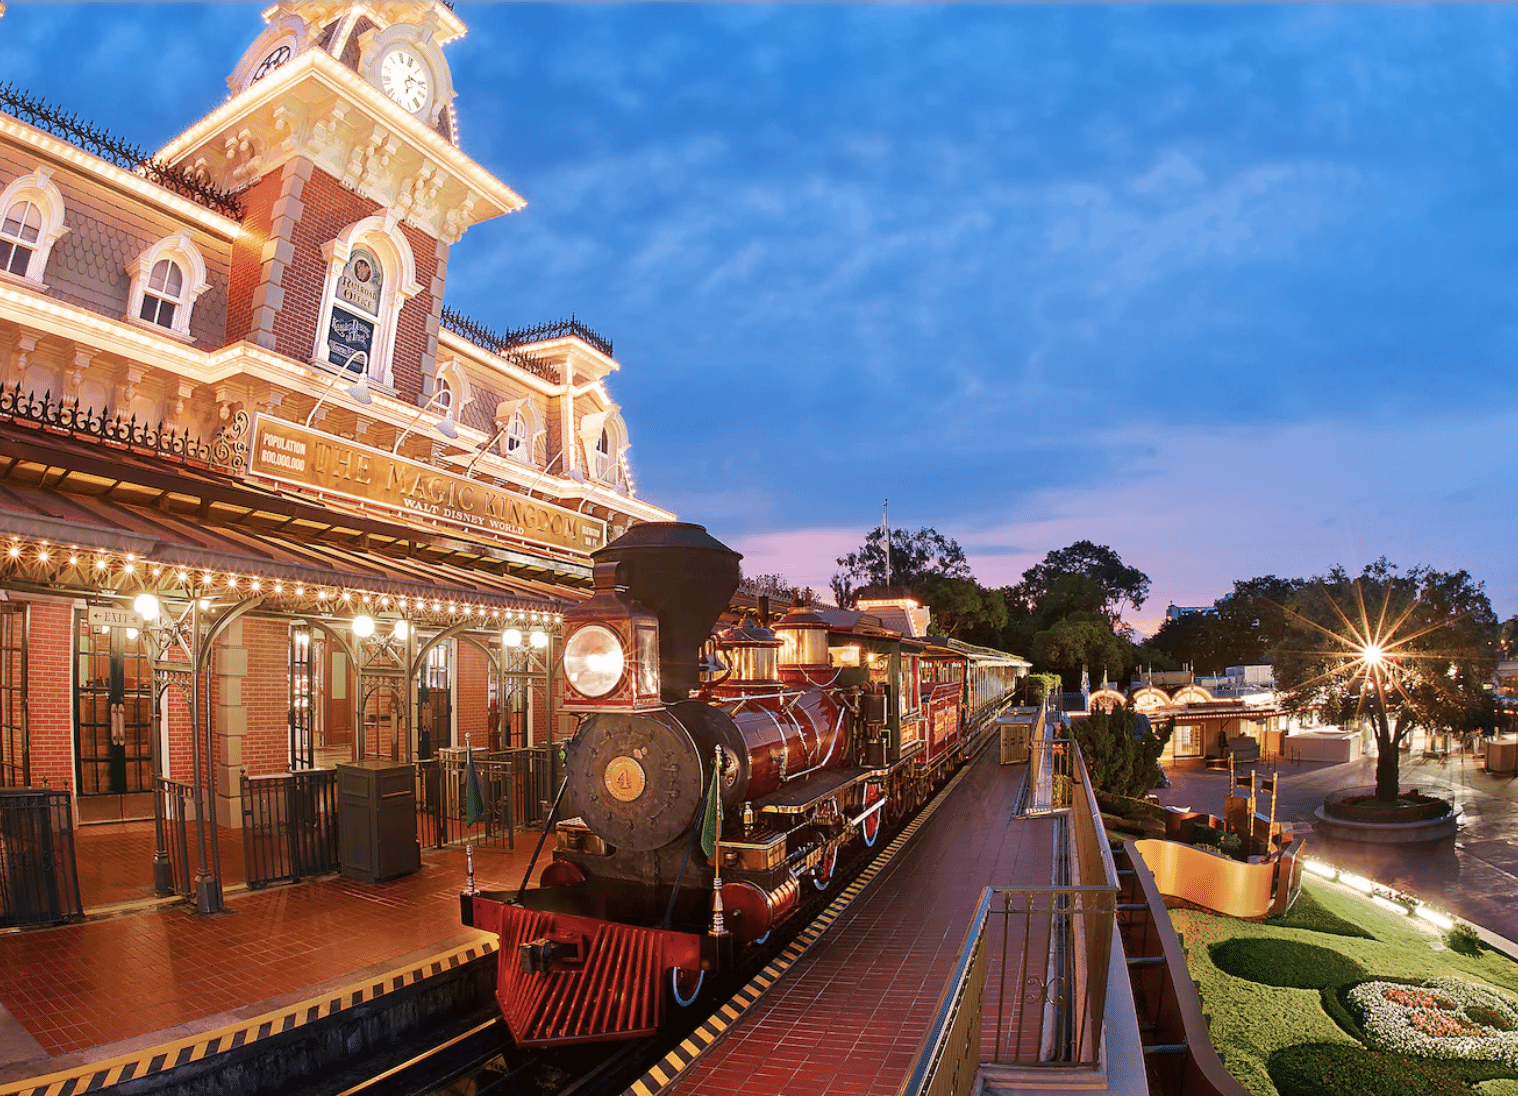 Ferrocarril de Walt Disney World - Atracción del Reino Mágico